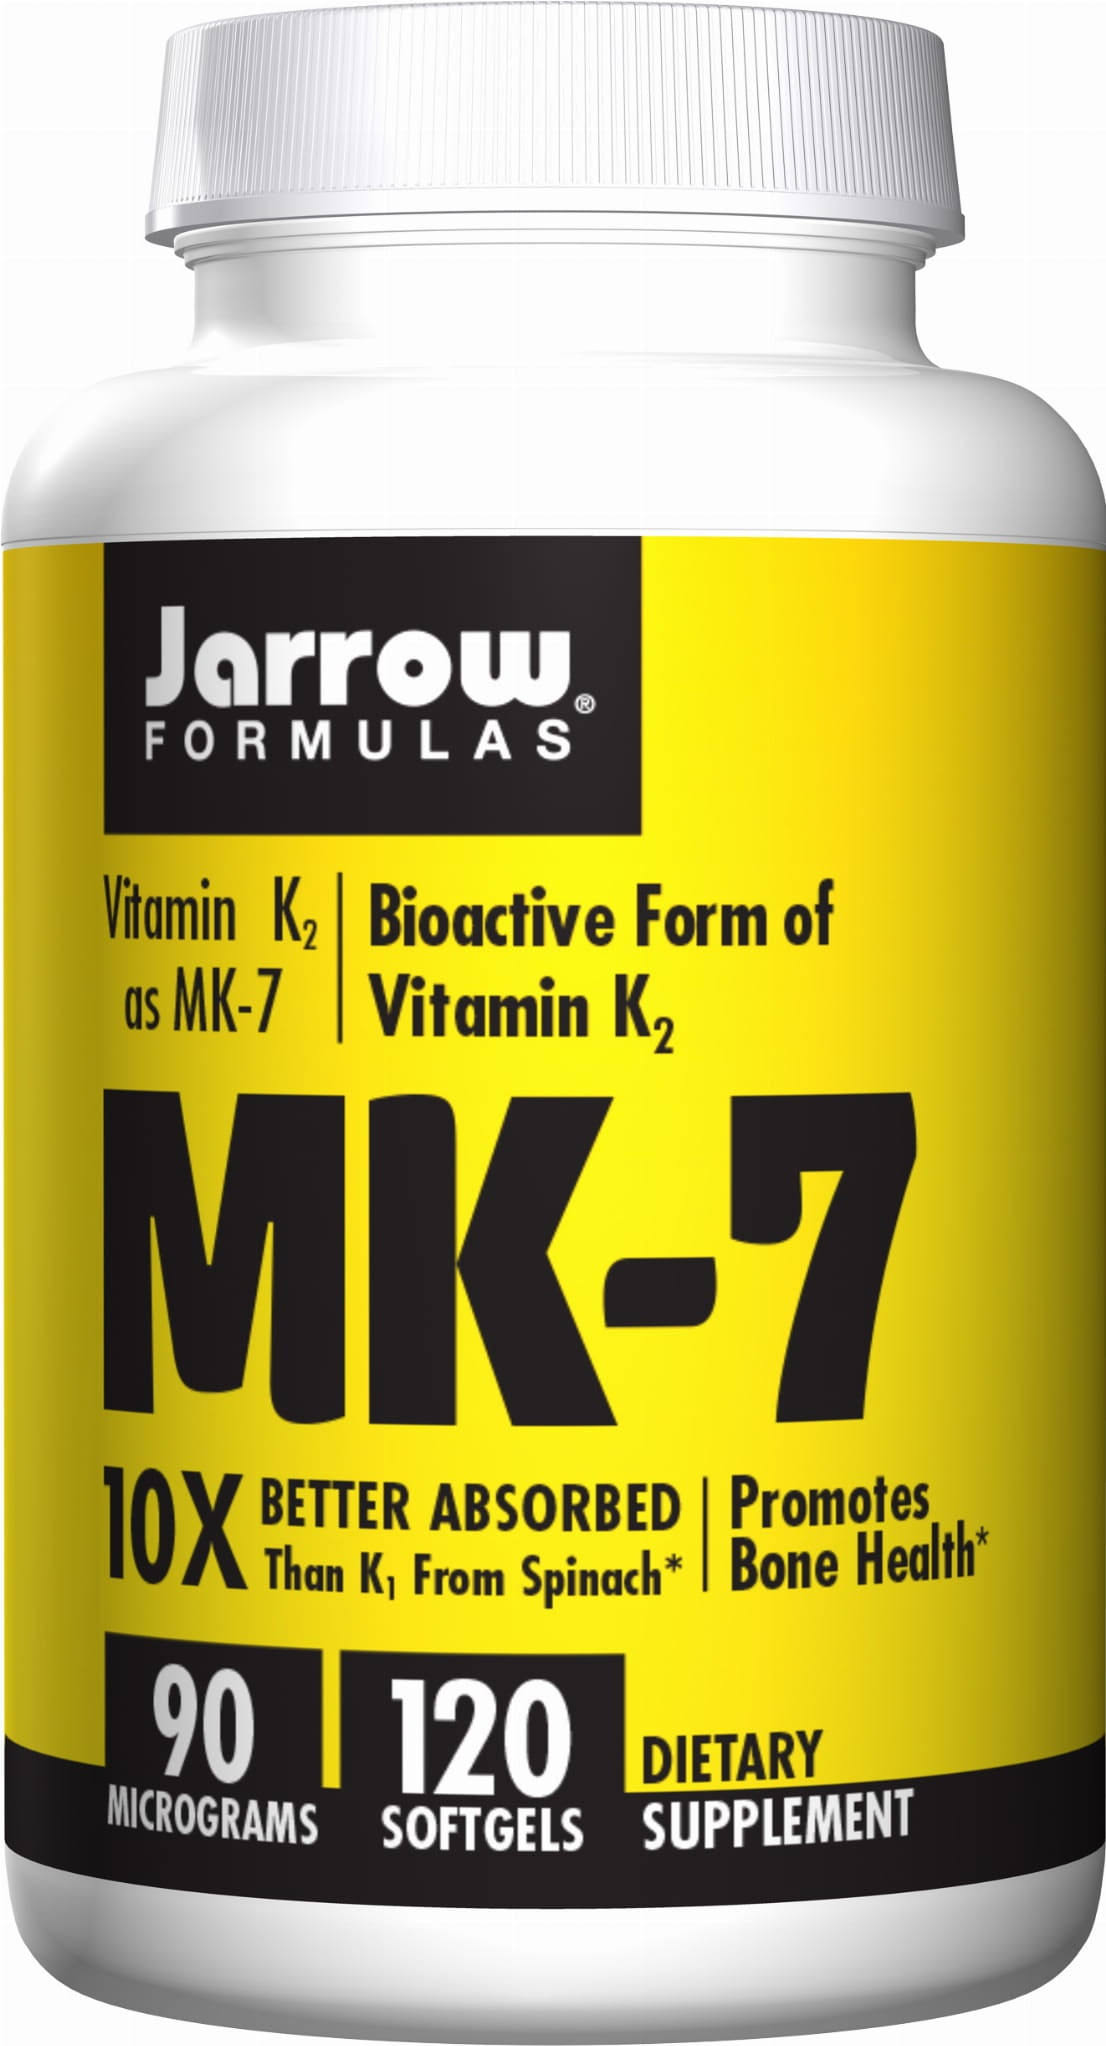 Jarrow Formulas MK-7 Supplement - Promotes Bone Health, 120 Softgels